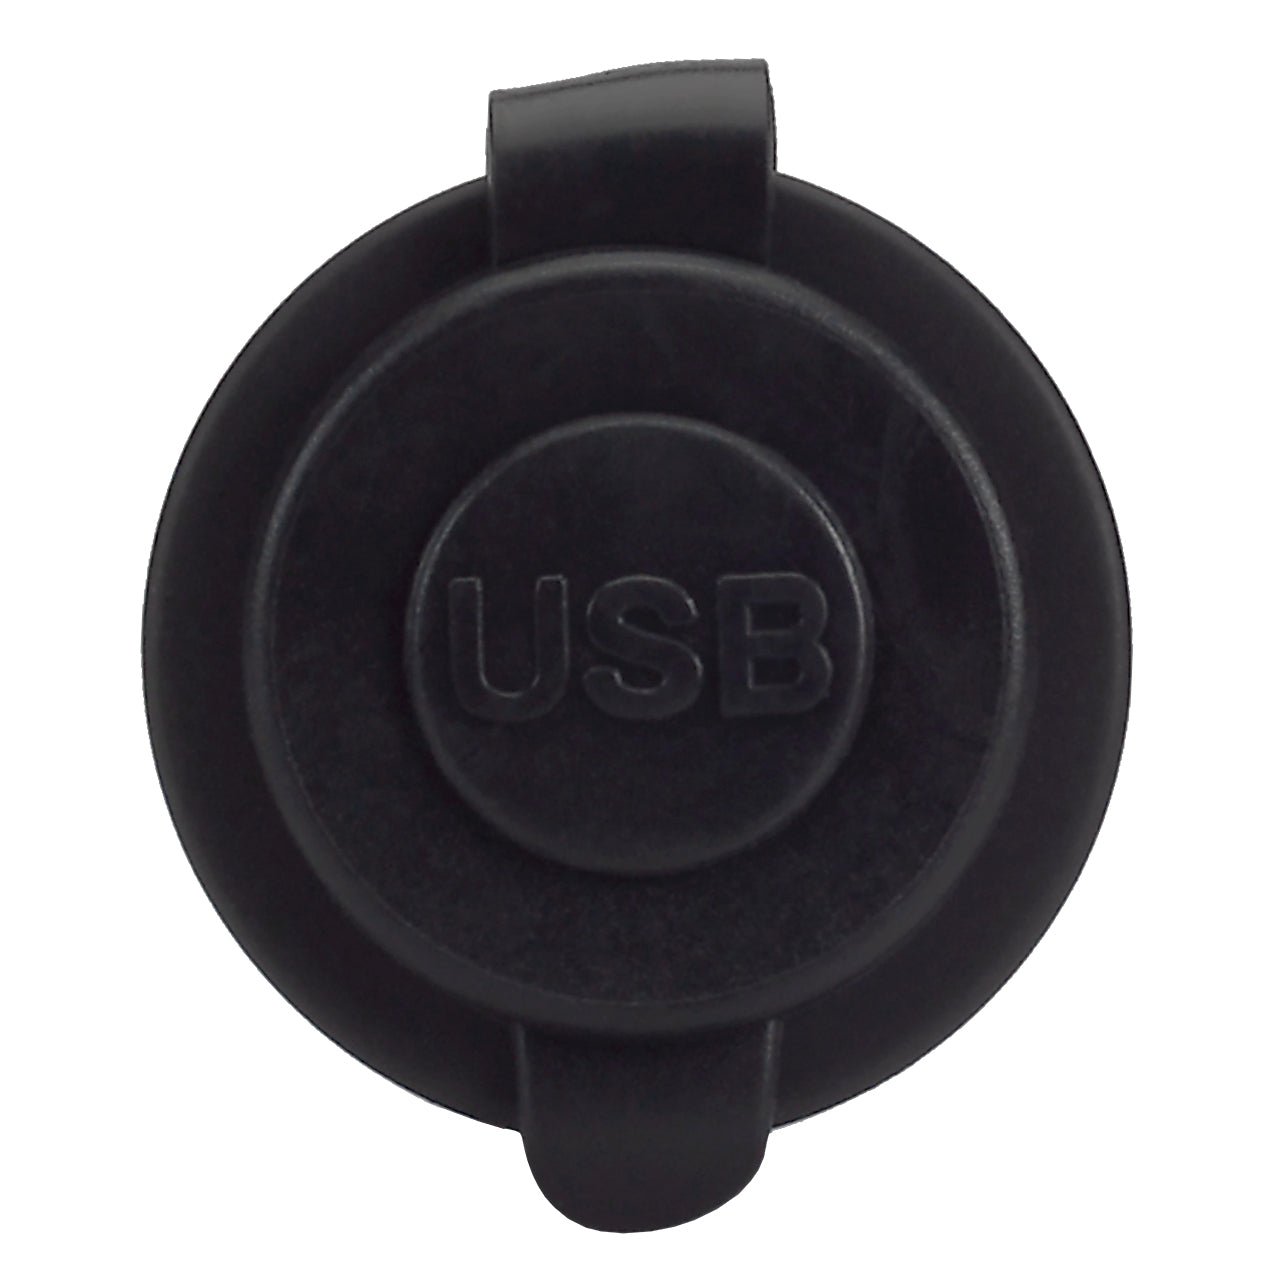 Magnadyne AUX-USB2 | Dual USB 2.1A Power Outlet Dash Screw Mount | Black - Magnadyne